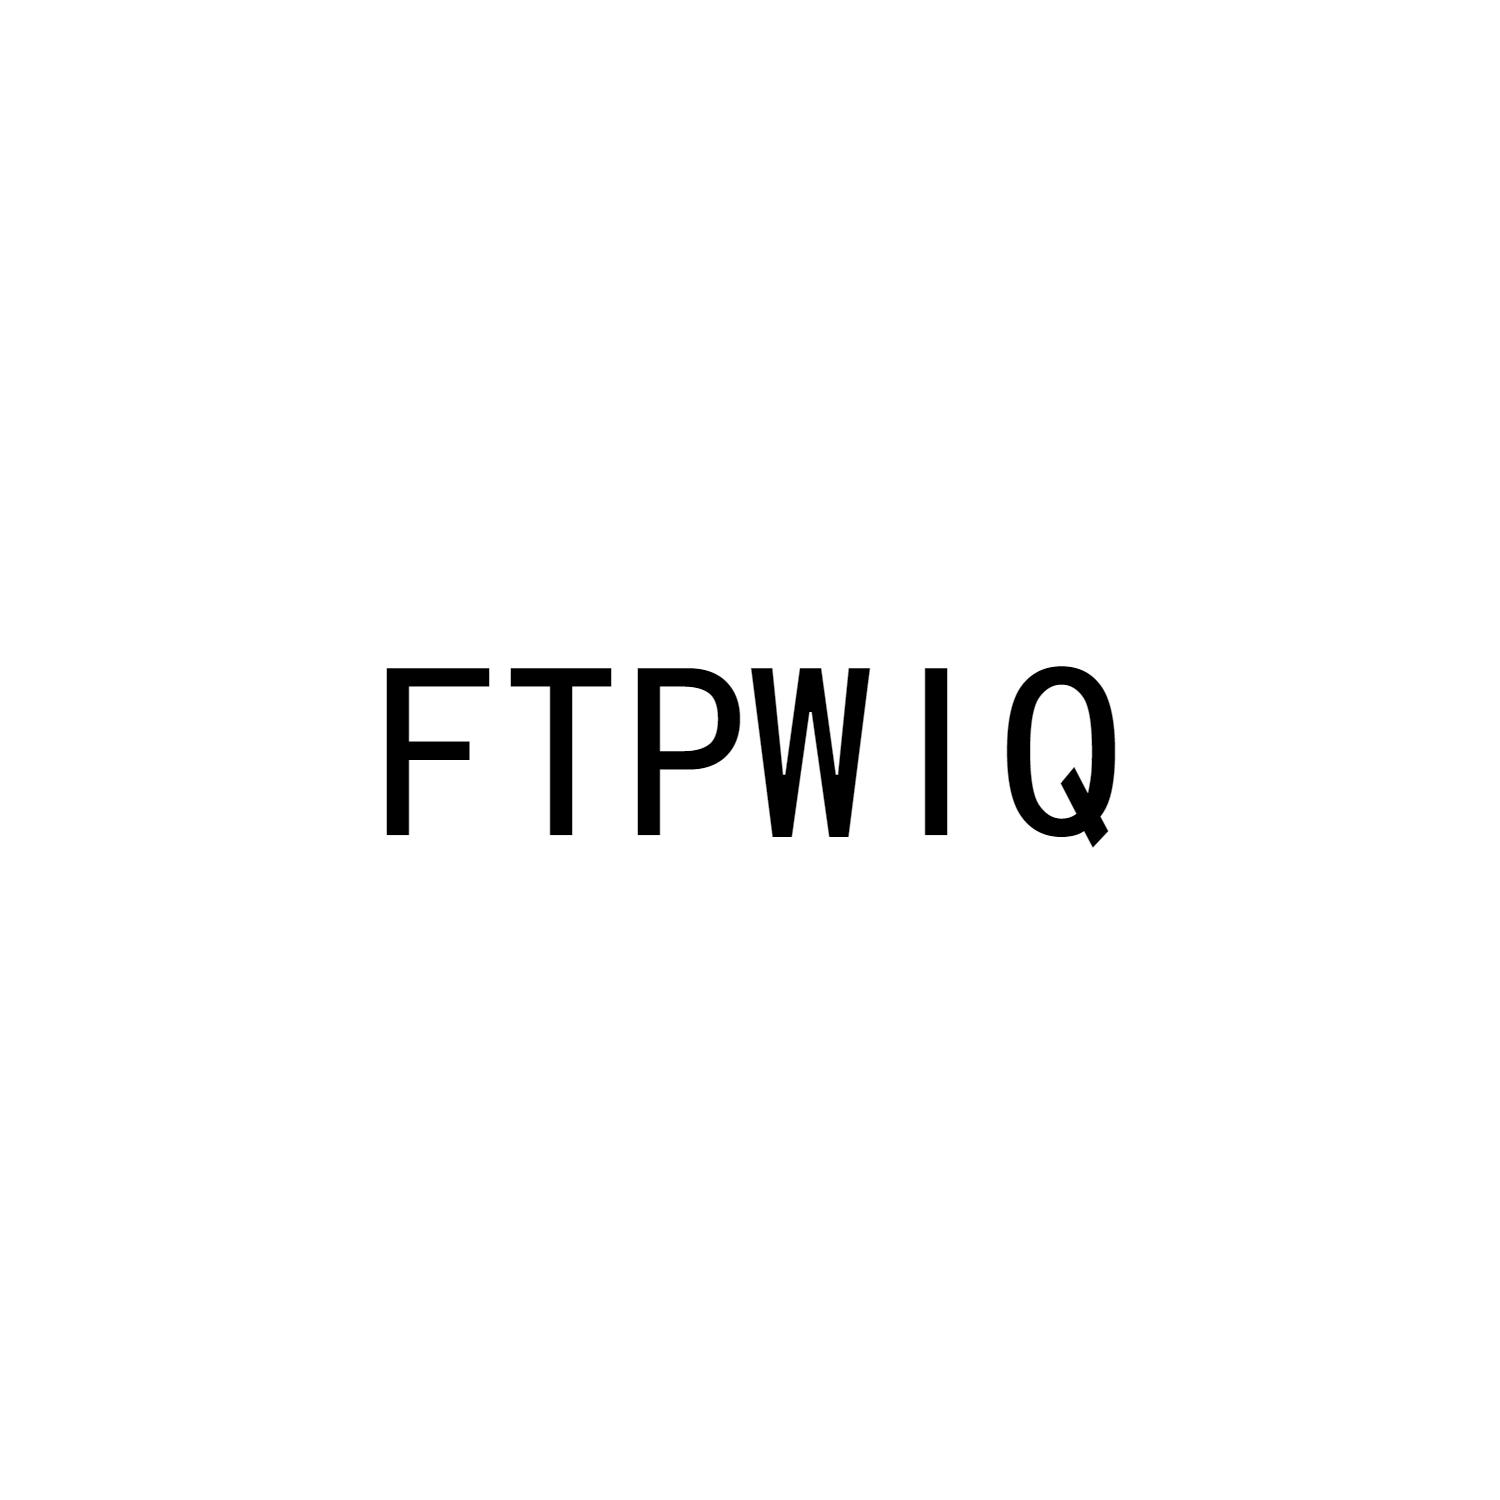 FTPWIQ